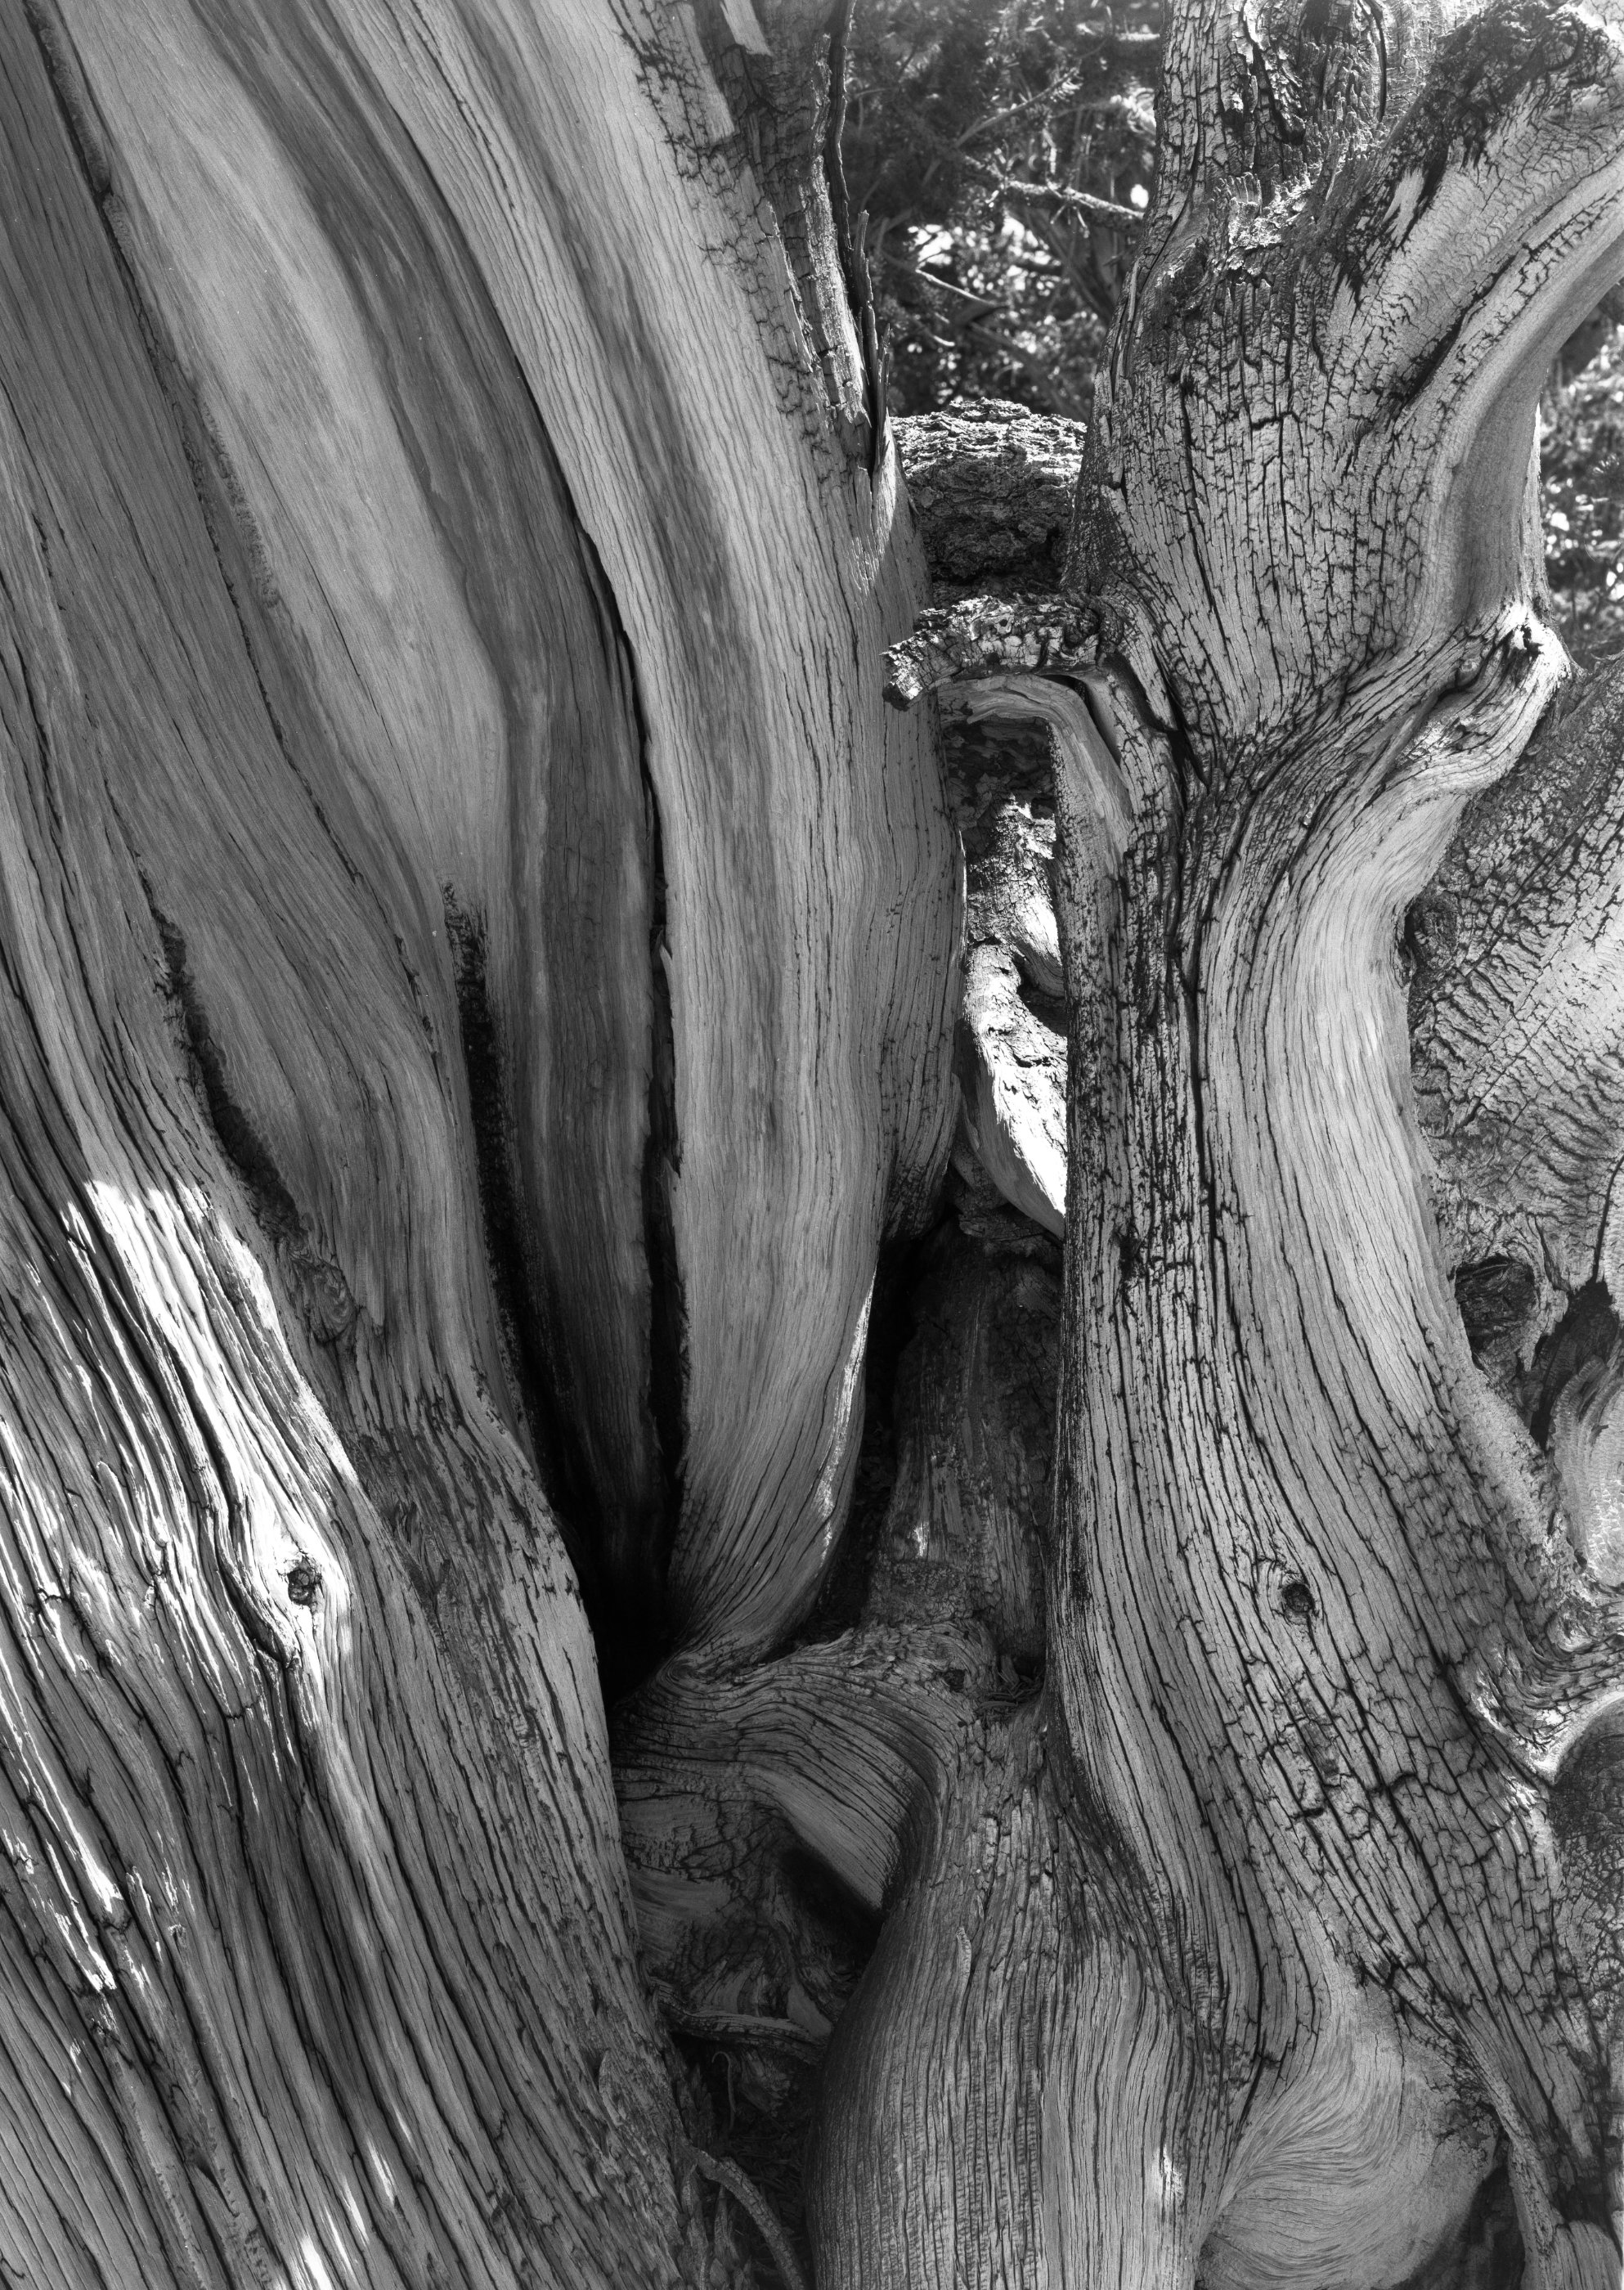 204.  Bristlecone Pine